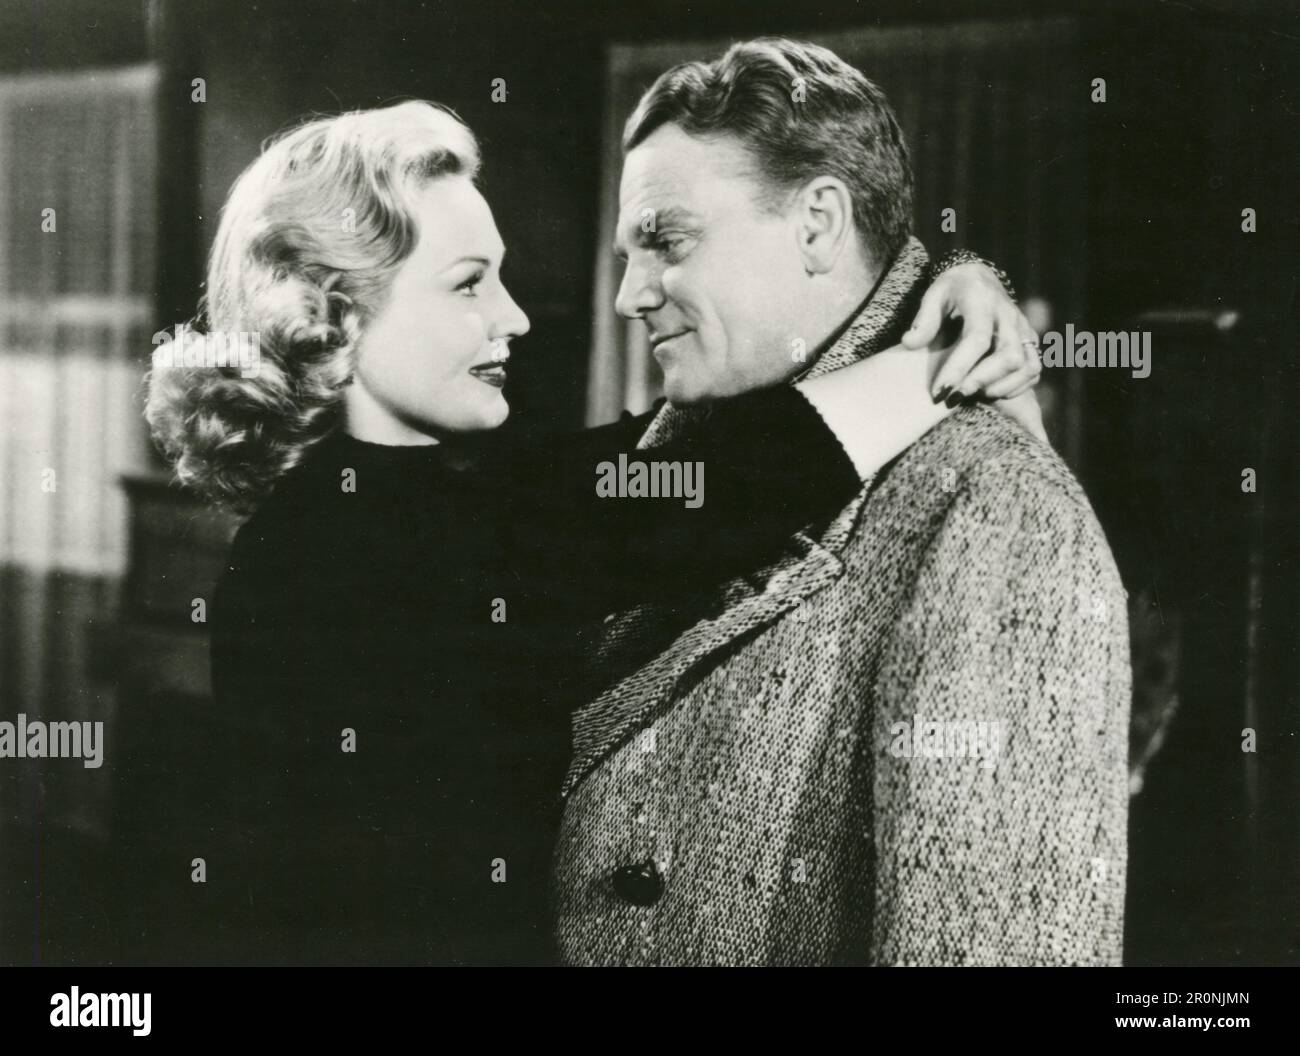 Schauspielerin Virginia Mayo und Schauspieler James Cagney im Film White Heat, USA 1949 Stockfoto